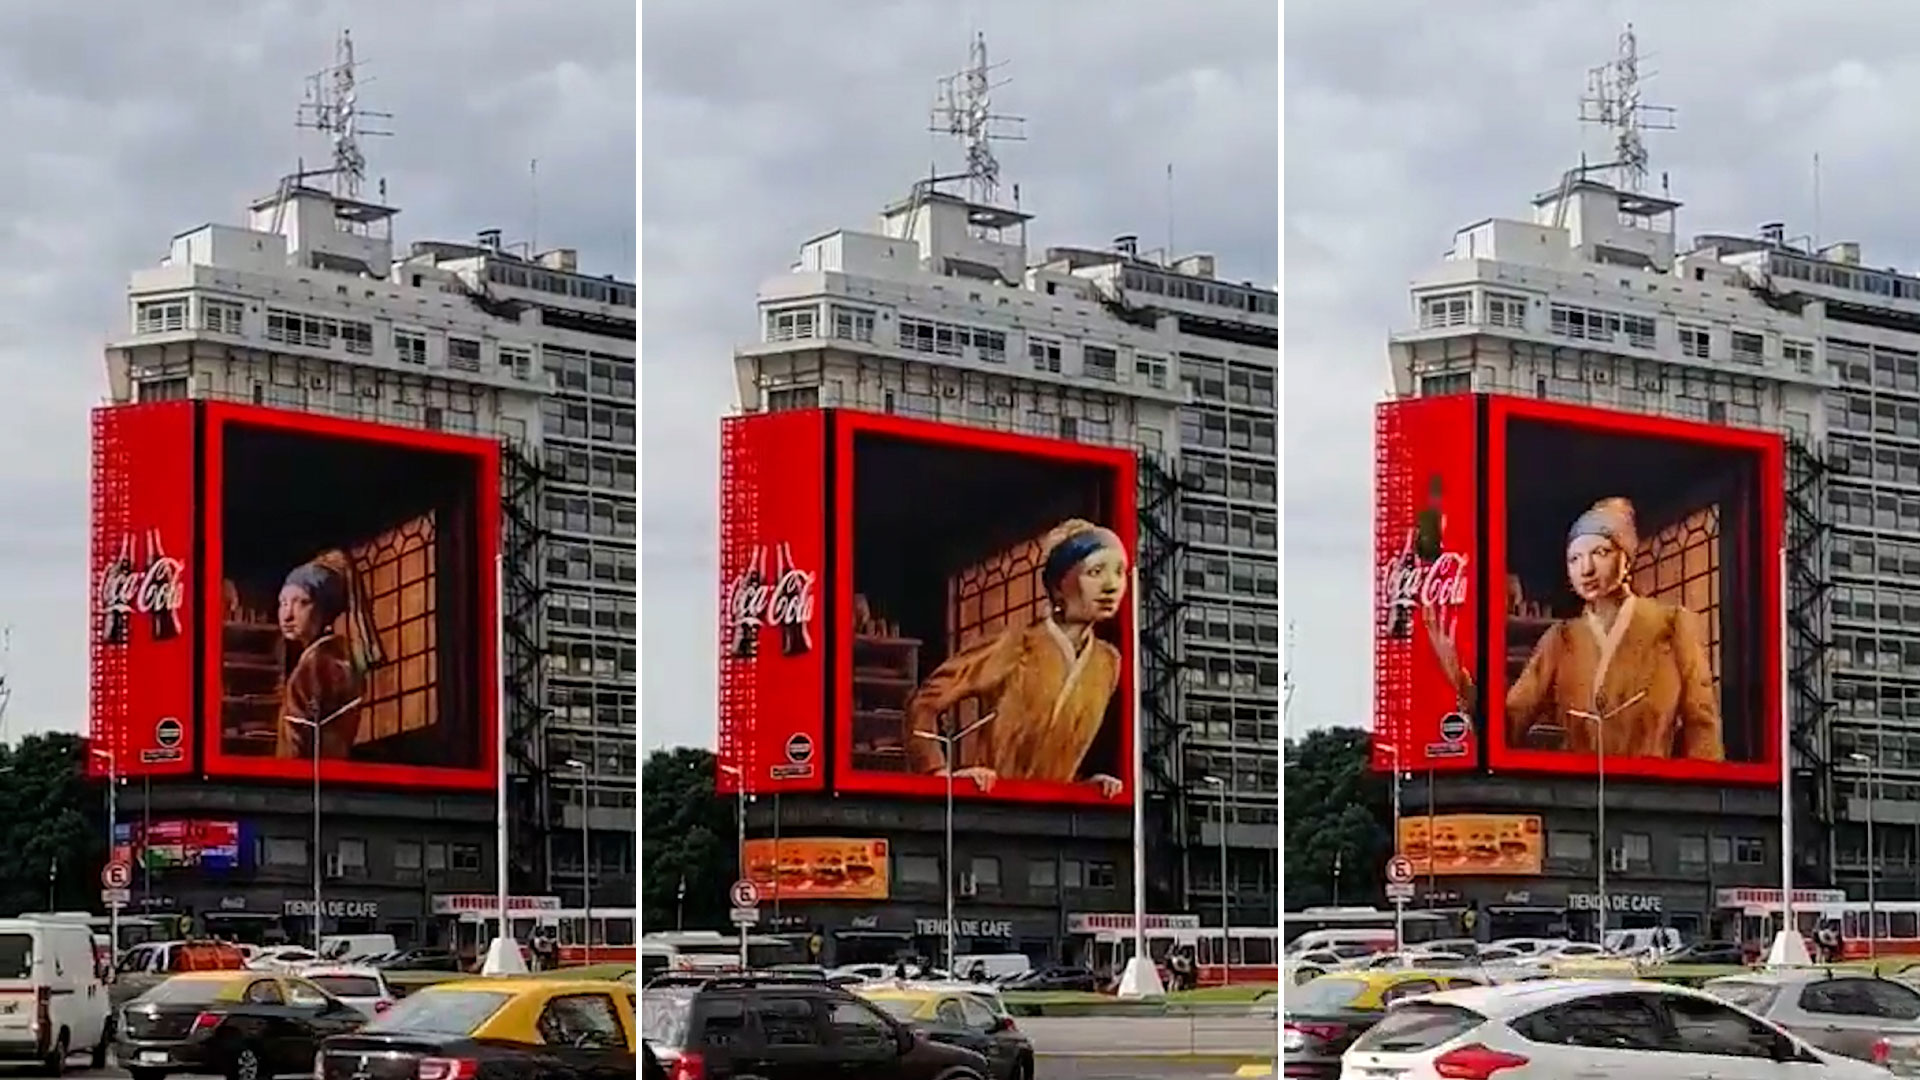 “La joven de la perla”, en una campaña publicitaria en 3D, frente al Obelisco   